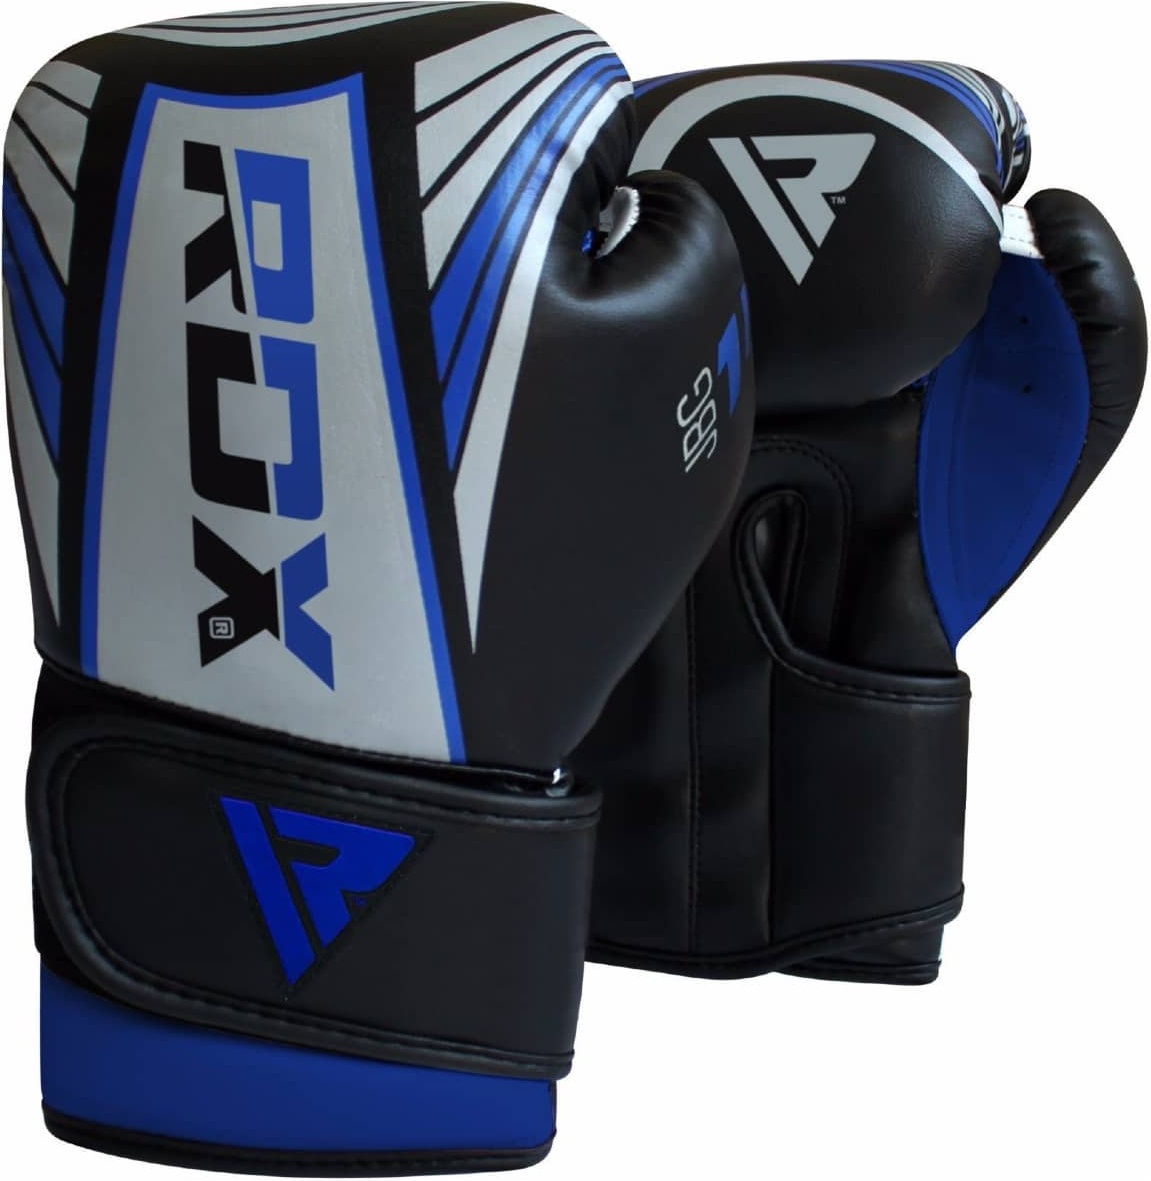 фото Боксерские перчатки rdx jbg-1u серебристые/синие 4 унции